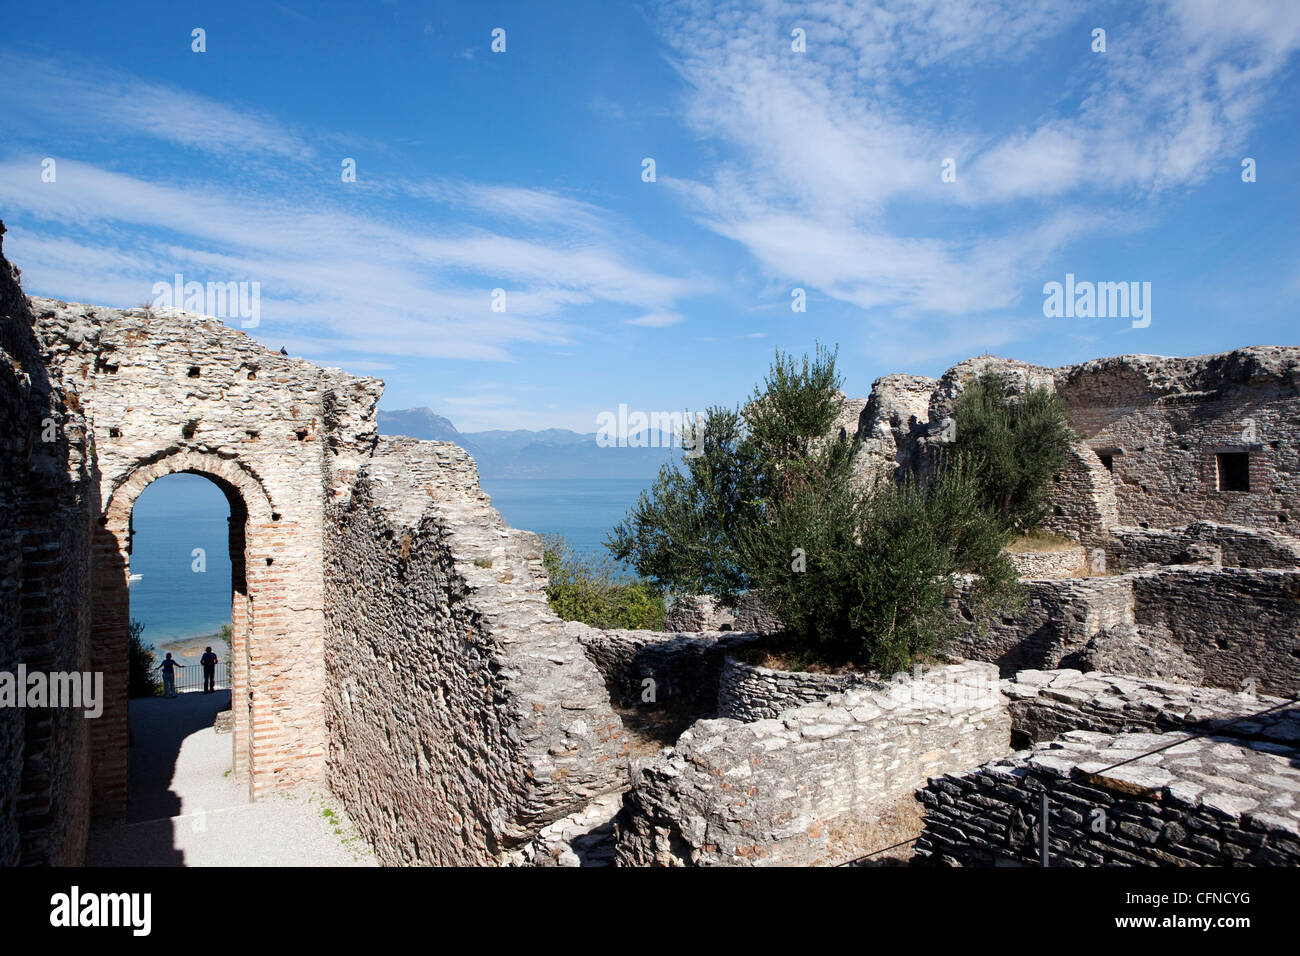 The Catullo's Villa (Grotte di Catullo), Lake Garda, Italy, Europe Stock Photo